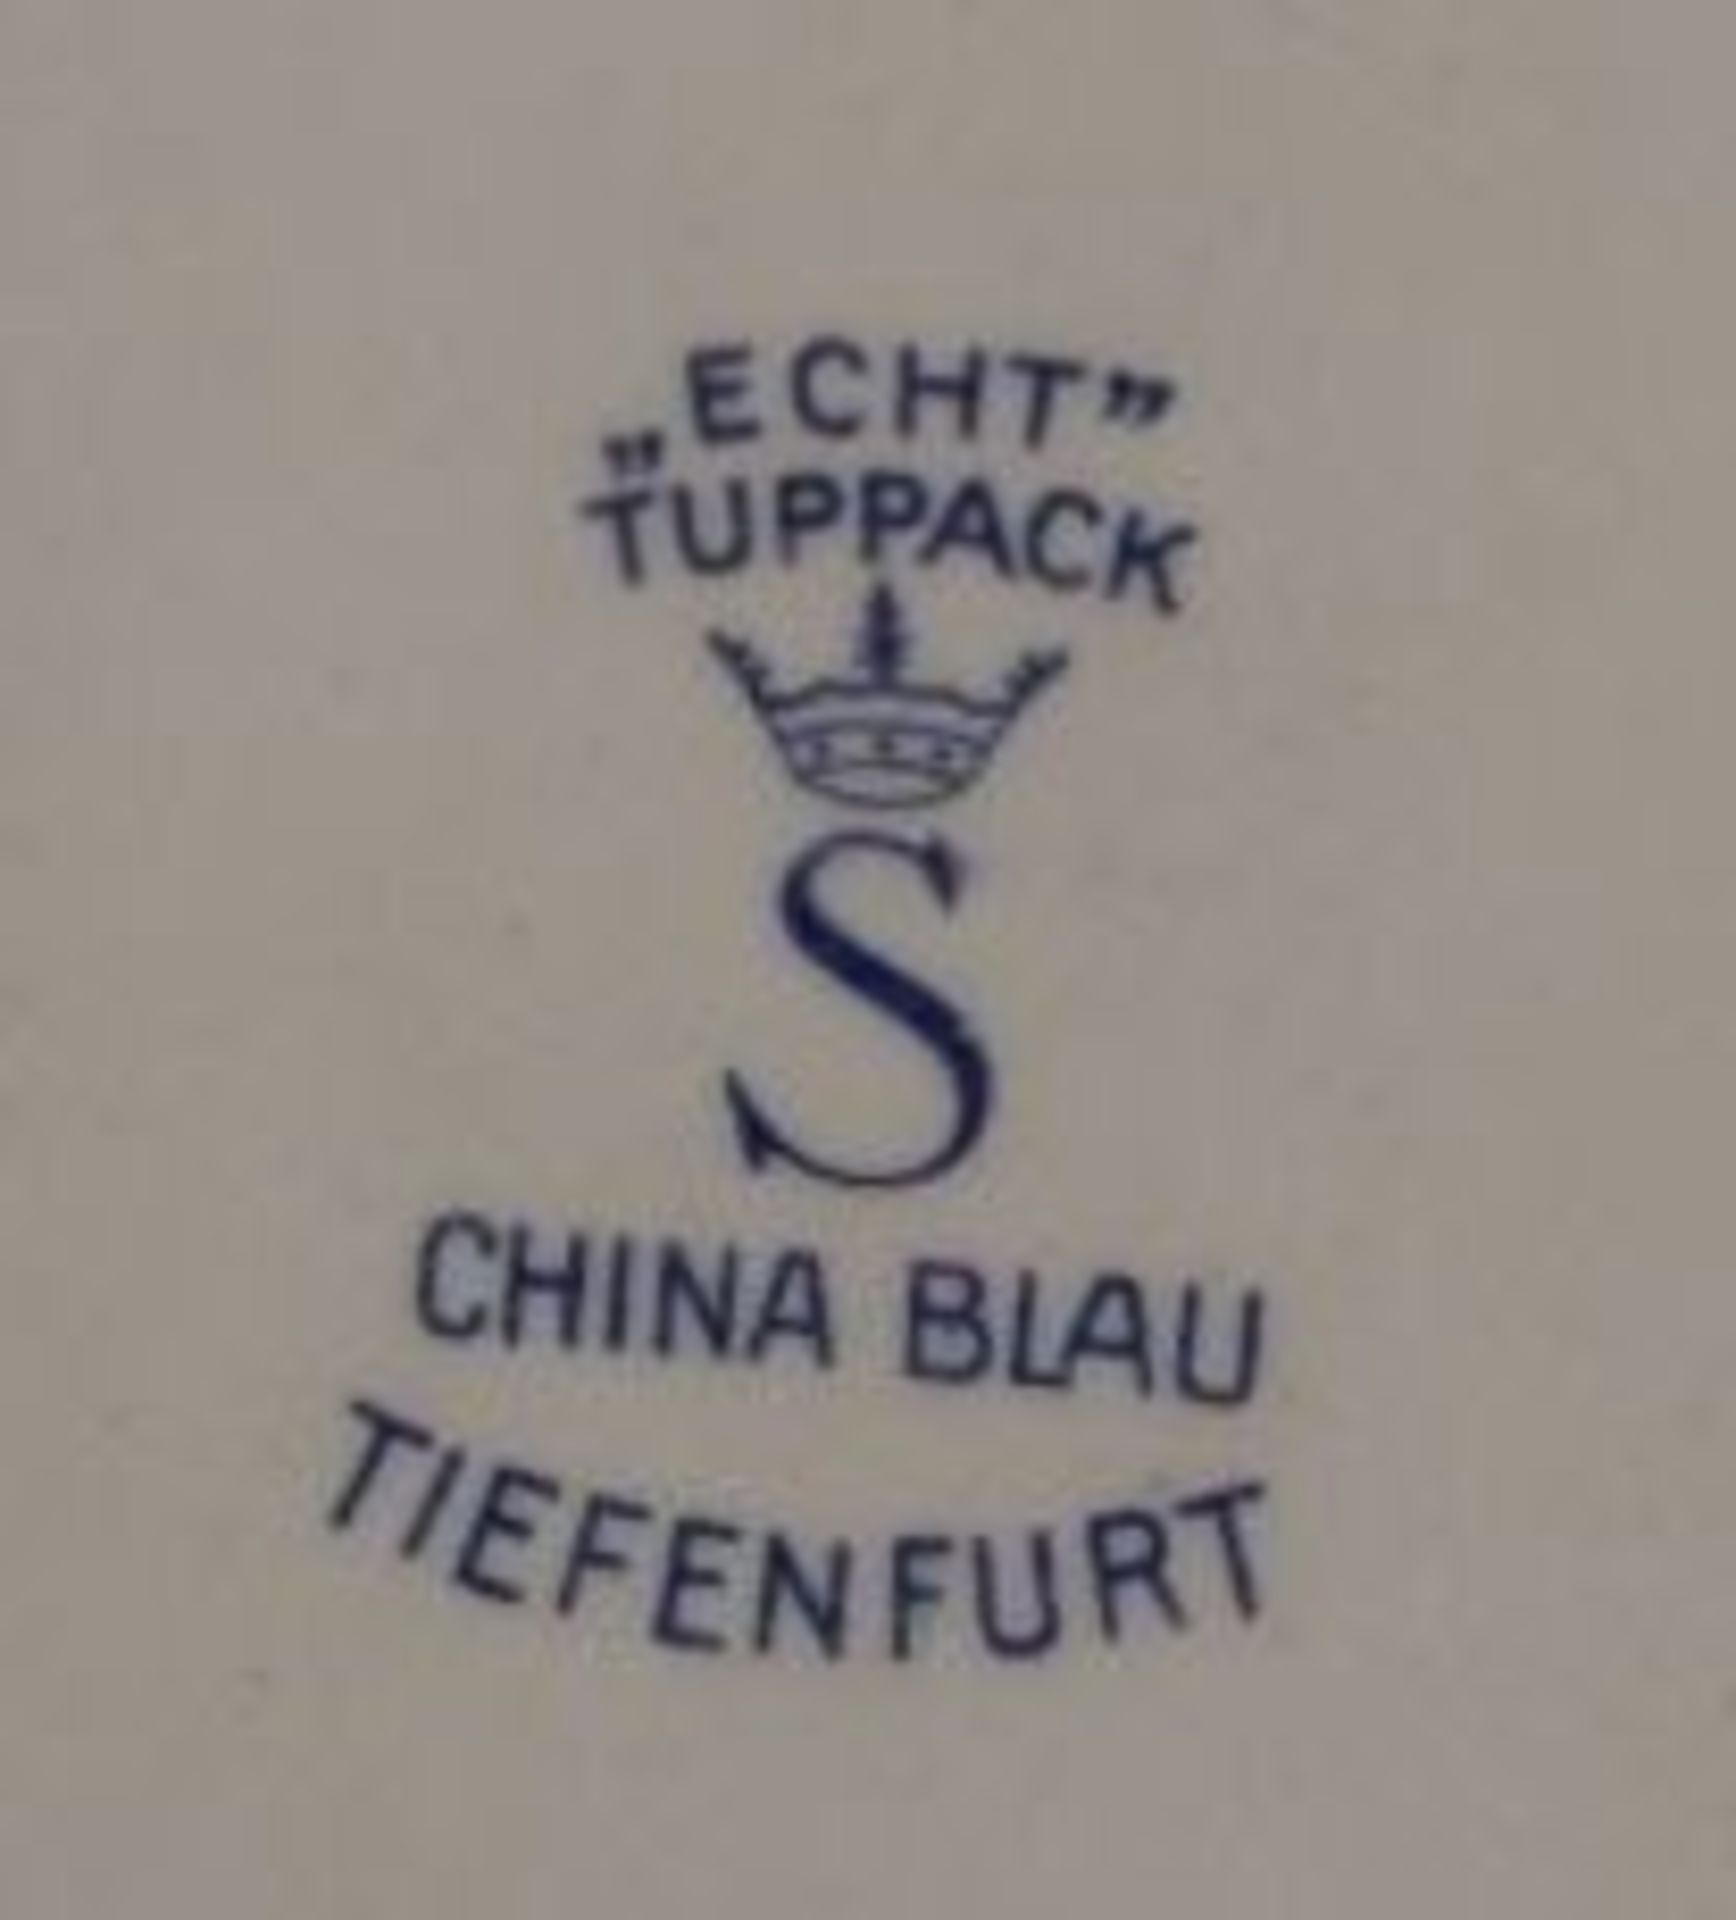 kl. Konvolut China Blau, teilw. Tiefenfurth, Teekern, kl. Tablett und Schale, Kanne H-14cm. - Bild 2 aus 2